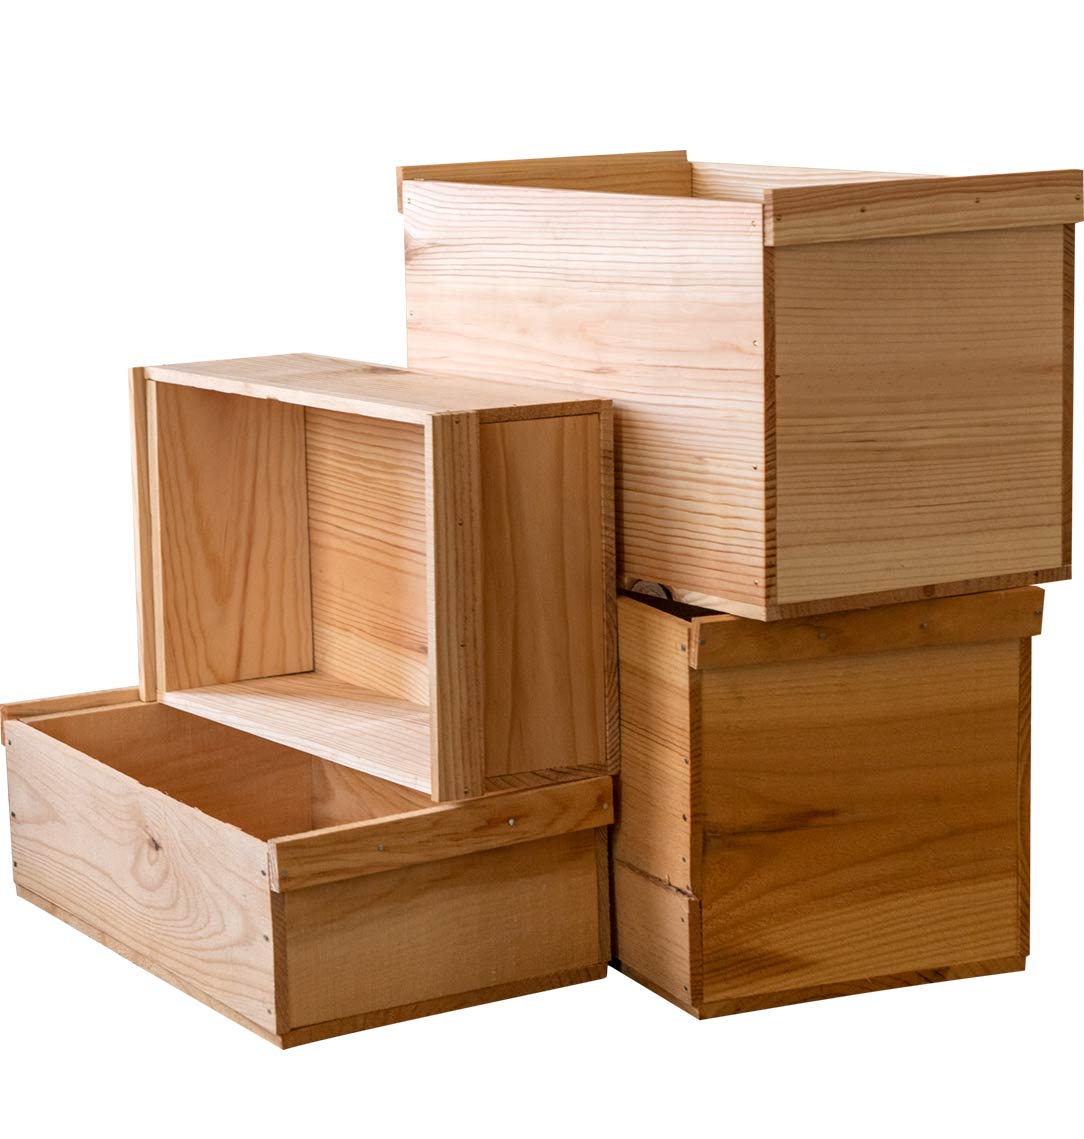 りんご箱 平箱 4箱 // ストレージボックス 隙間収納 ベット下 ソファー 